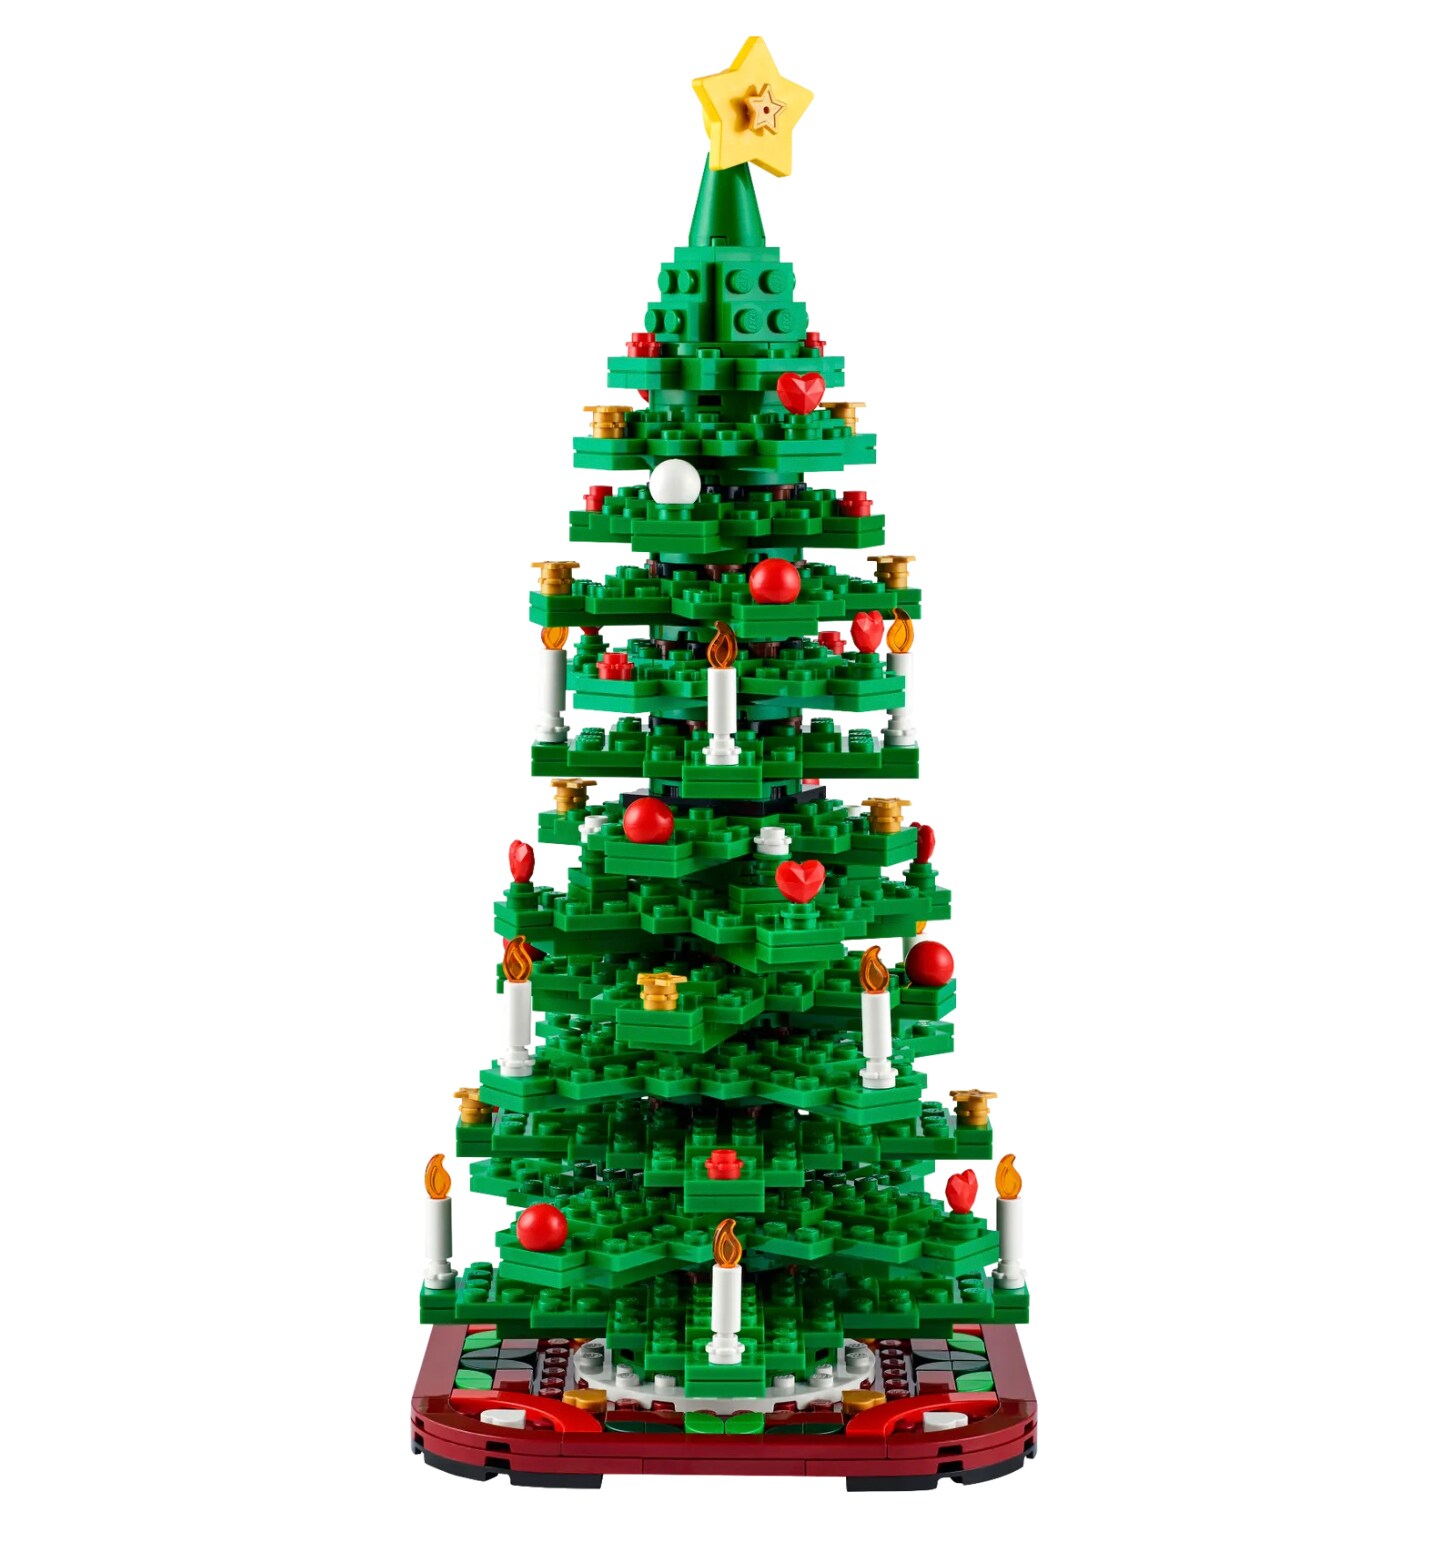 Albero di Natale Lego modello 2-in-1: si può comporre un unico albero o due più piccoli. Nella disposizione più grande misura 30 cm, si passa ai 23 cm dell'albero medio e ai 16 cm di quello piccolo. LEGO (44,99 €).